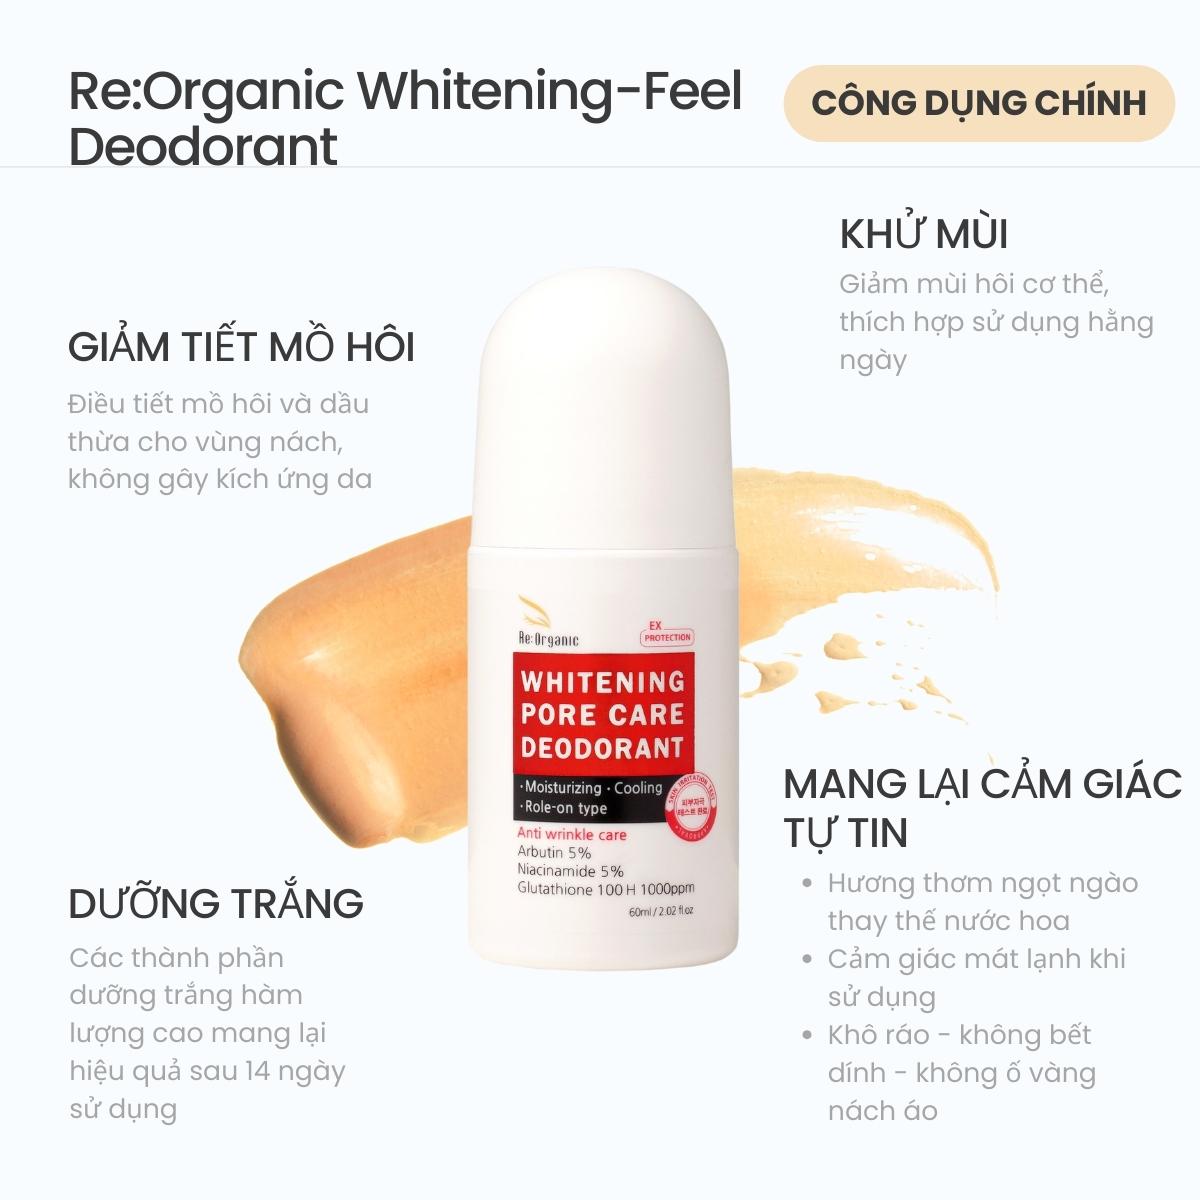 Lăn khử mùi hôi nách Re:Organic Whitening-Feel Deodorant Hàn Quốc 60ml, ức chế tiết mồ hôi dưỡng trắng mờ thâm không gây ố vàng nách áo